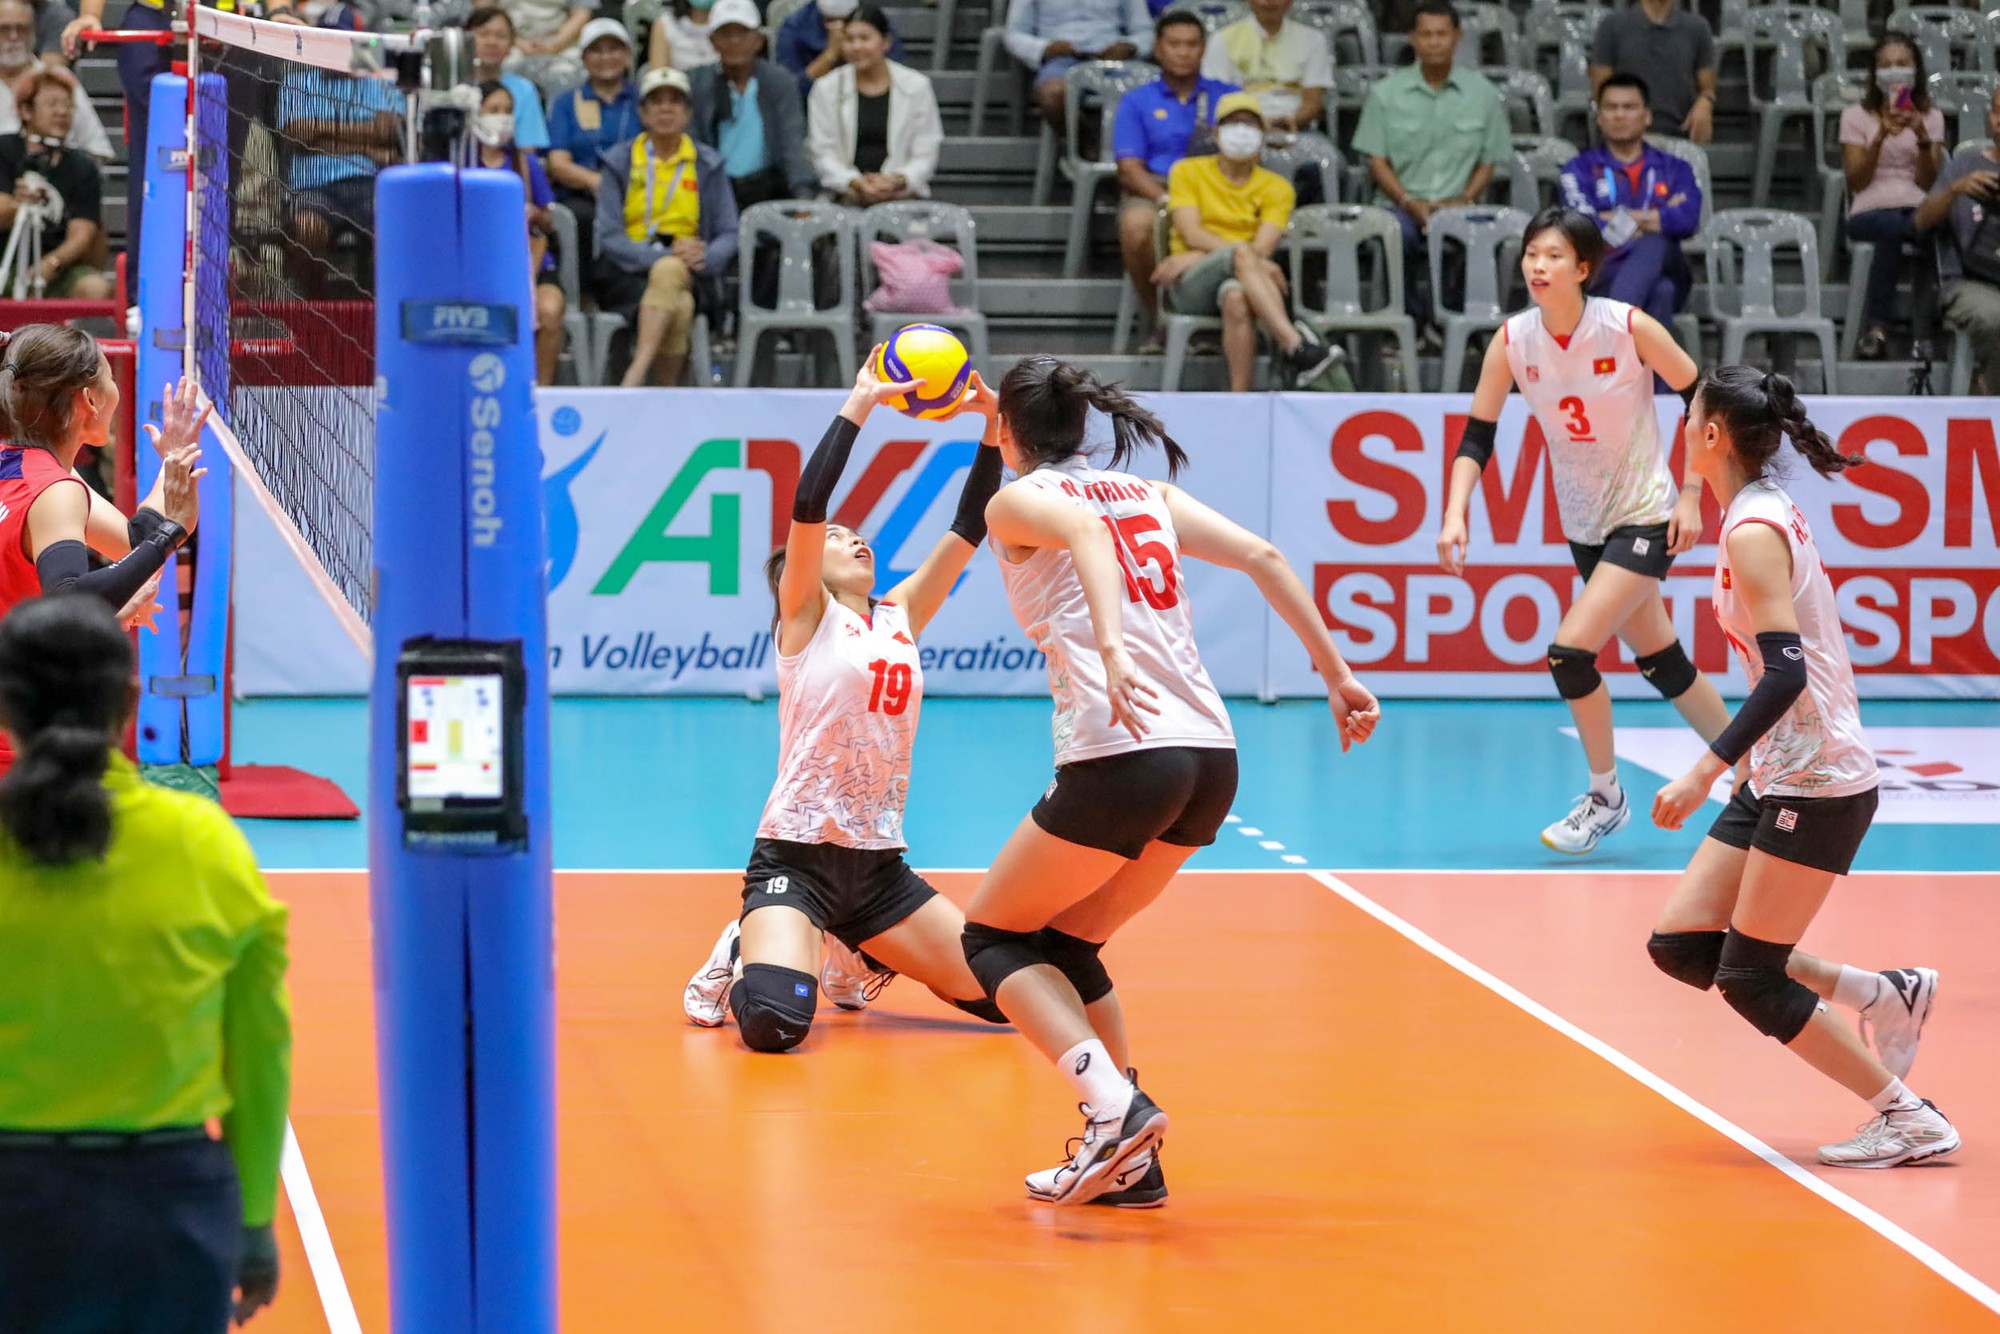 Tuyển bóng chuyền Việt Nam suýt gây sốc trước cựu vô địch Nhật Bản - Ảnh 6.